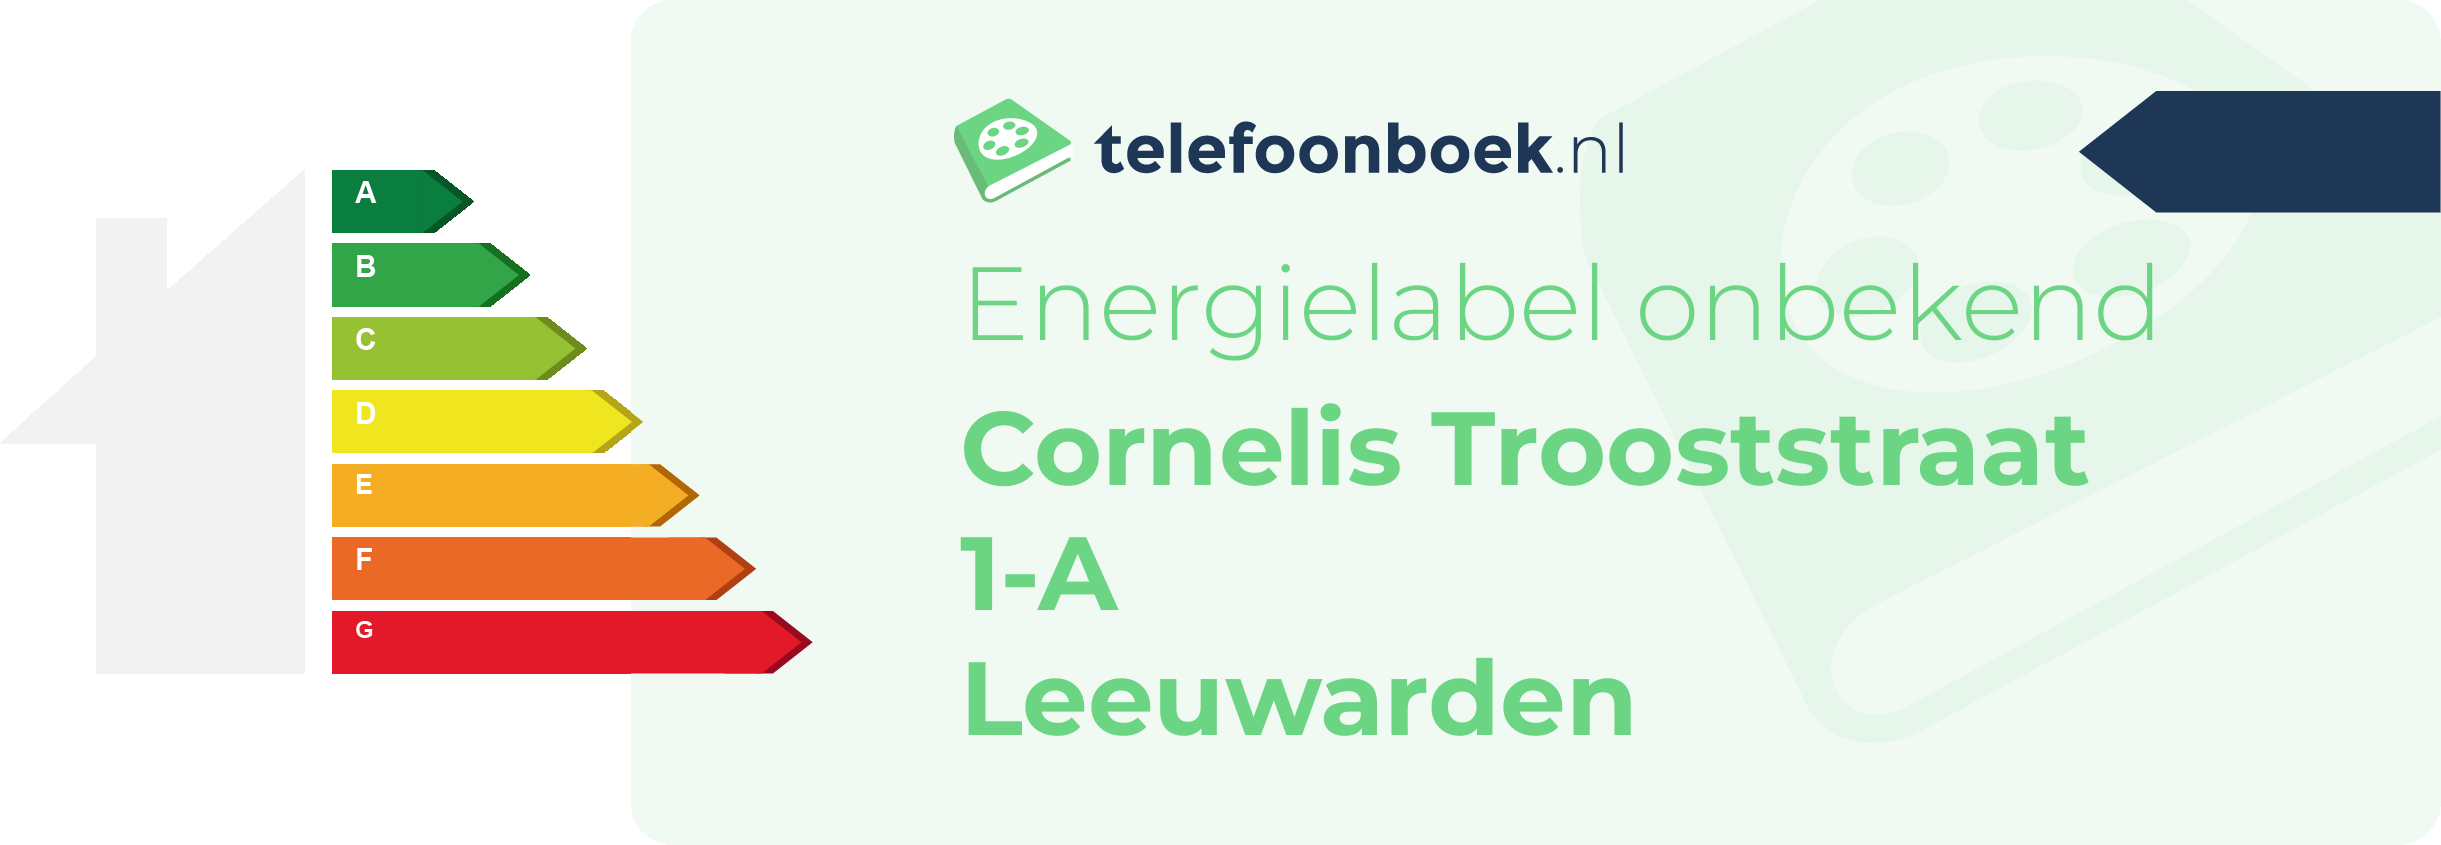 Energielabel Cornelis Trooststraat 1-A Leeuwarden